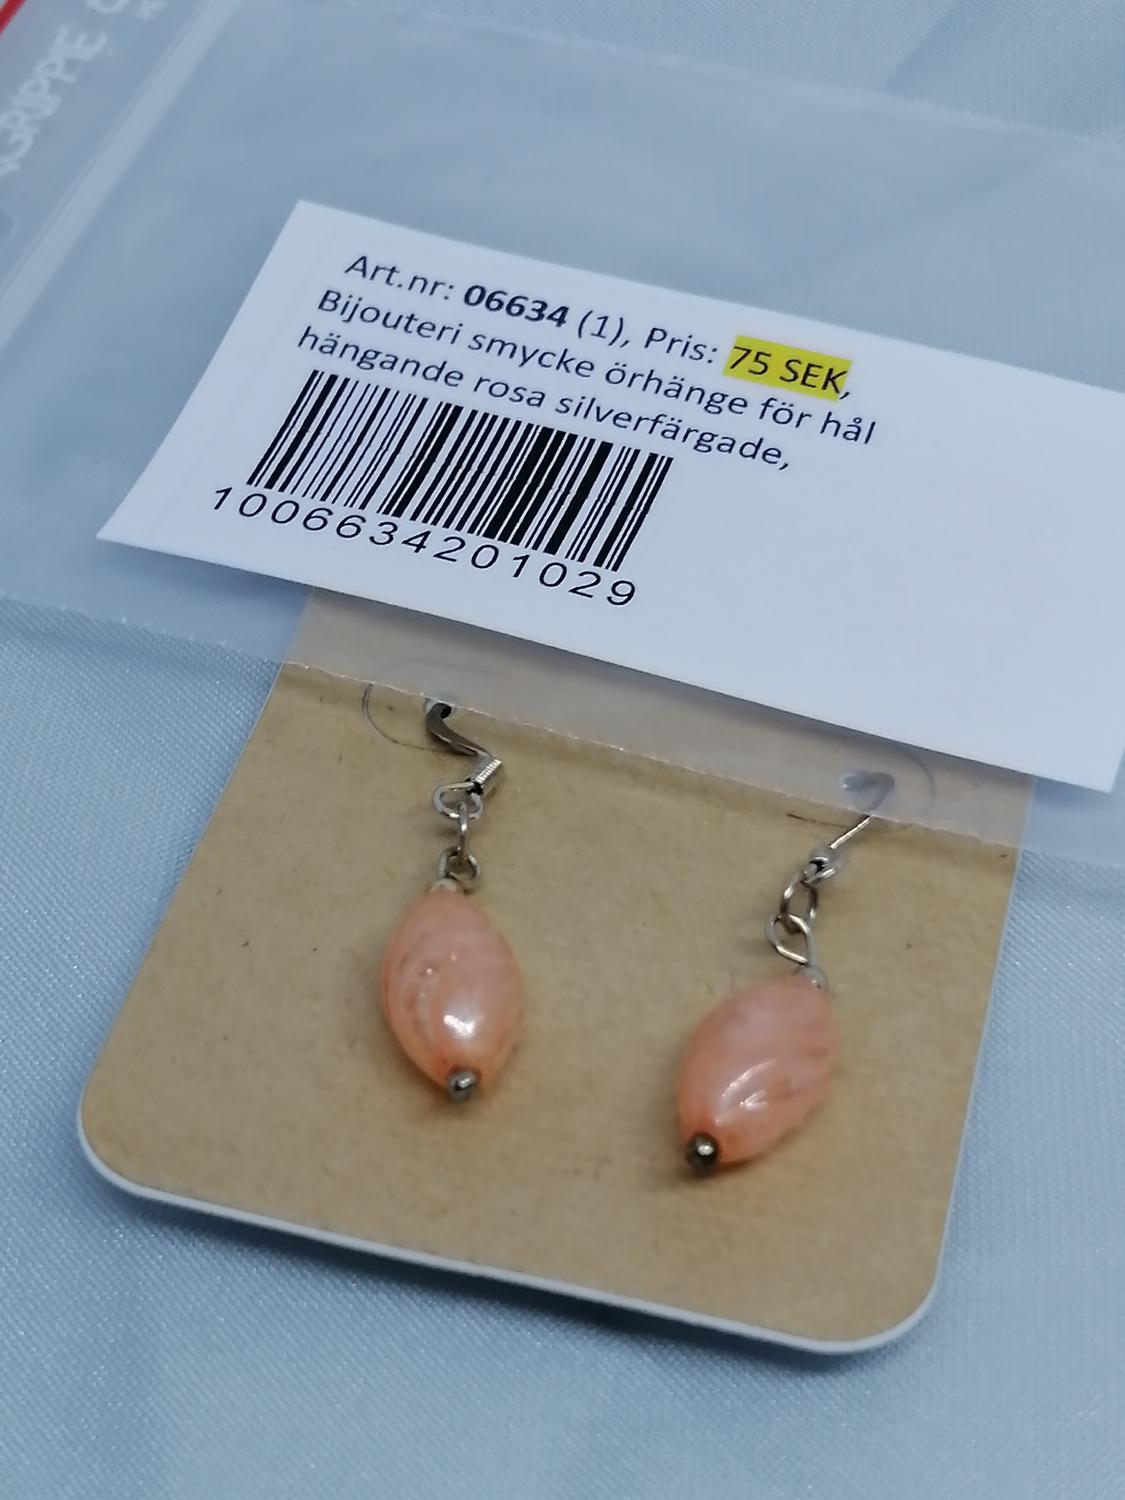 Bijouteri smycke örhänge för hål hängande rosa silverfärgade